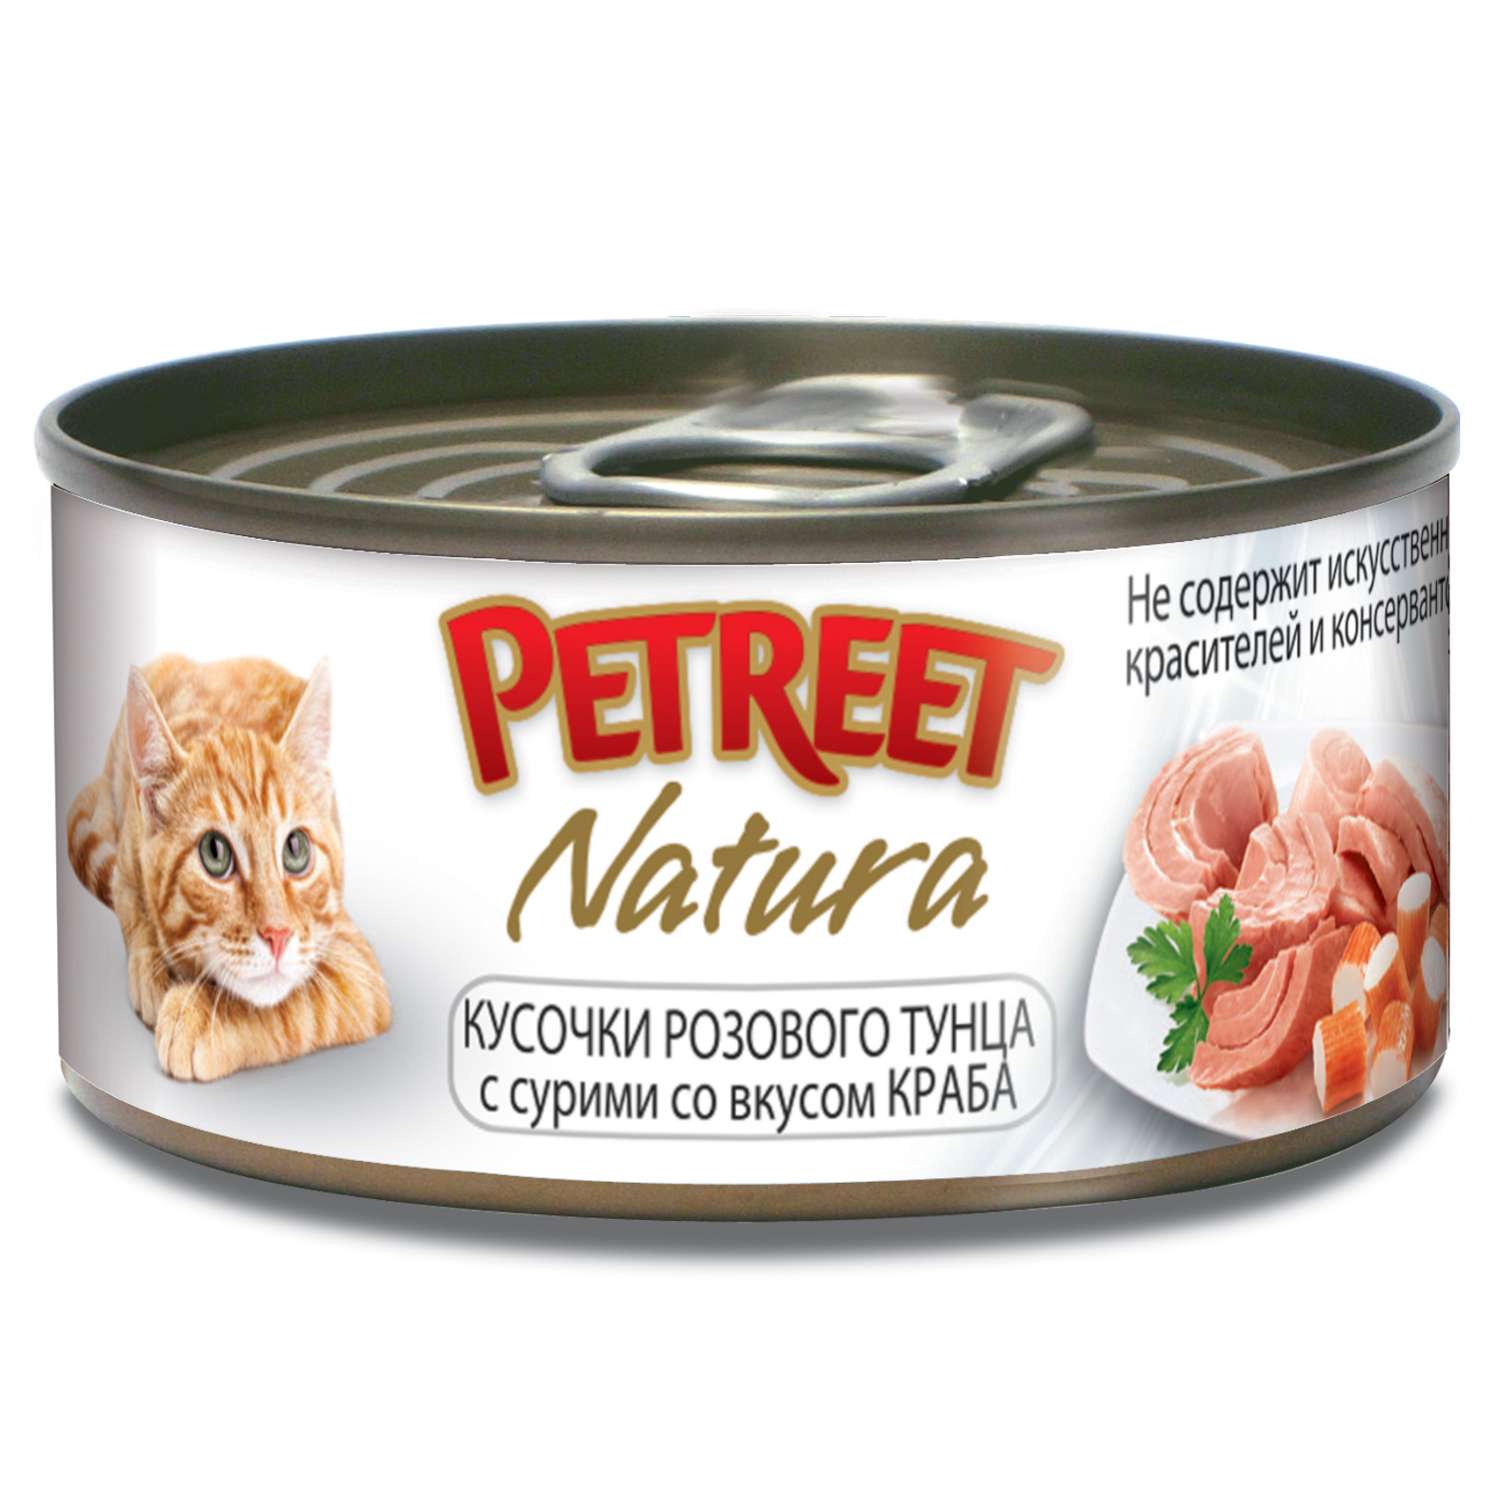 Корм влажный для кошек Petreet 70г кусочки розового тунца с крабом сурими консервированный - фото 1